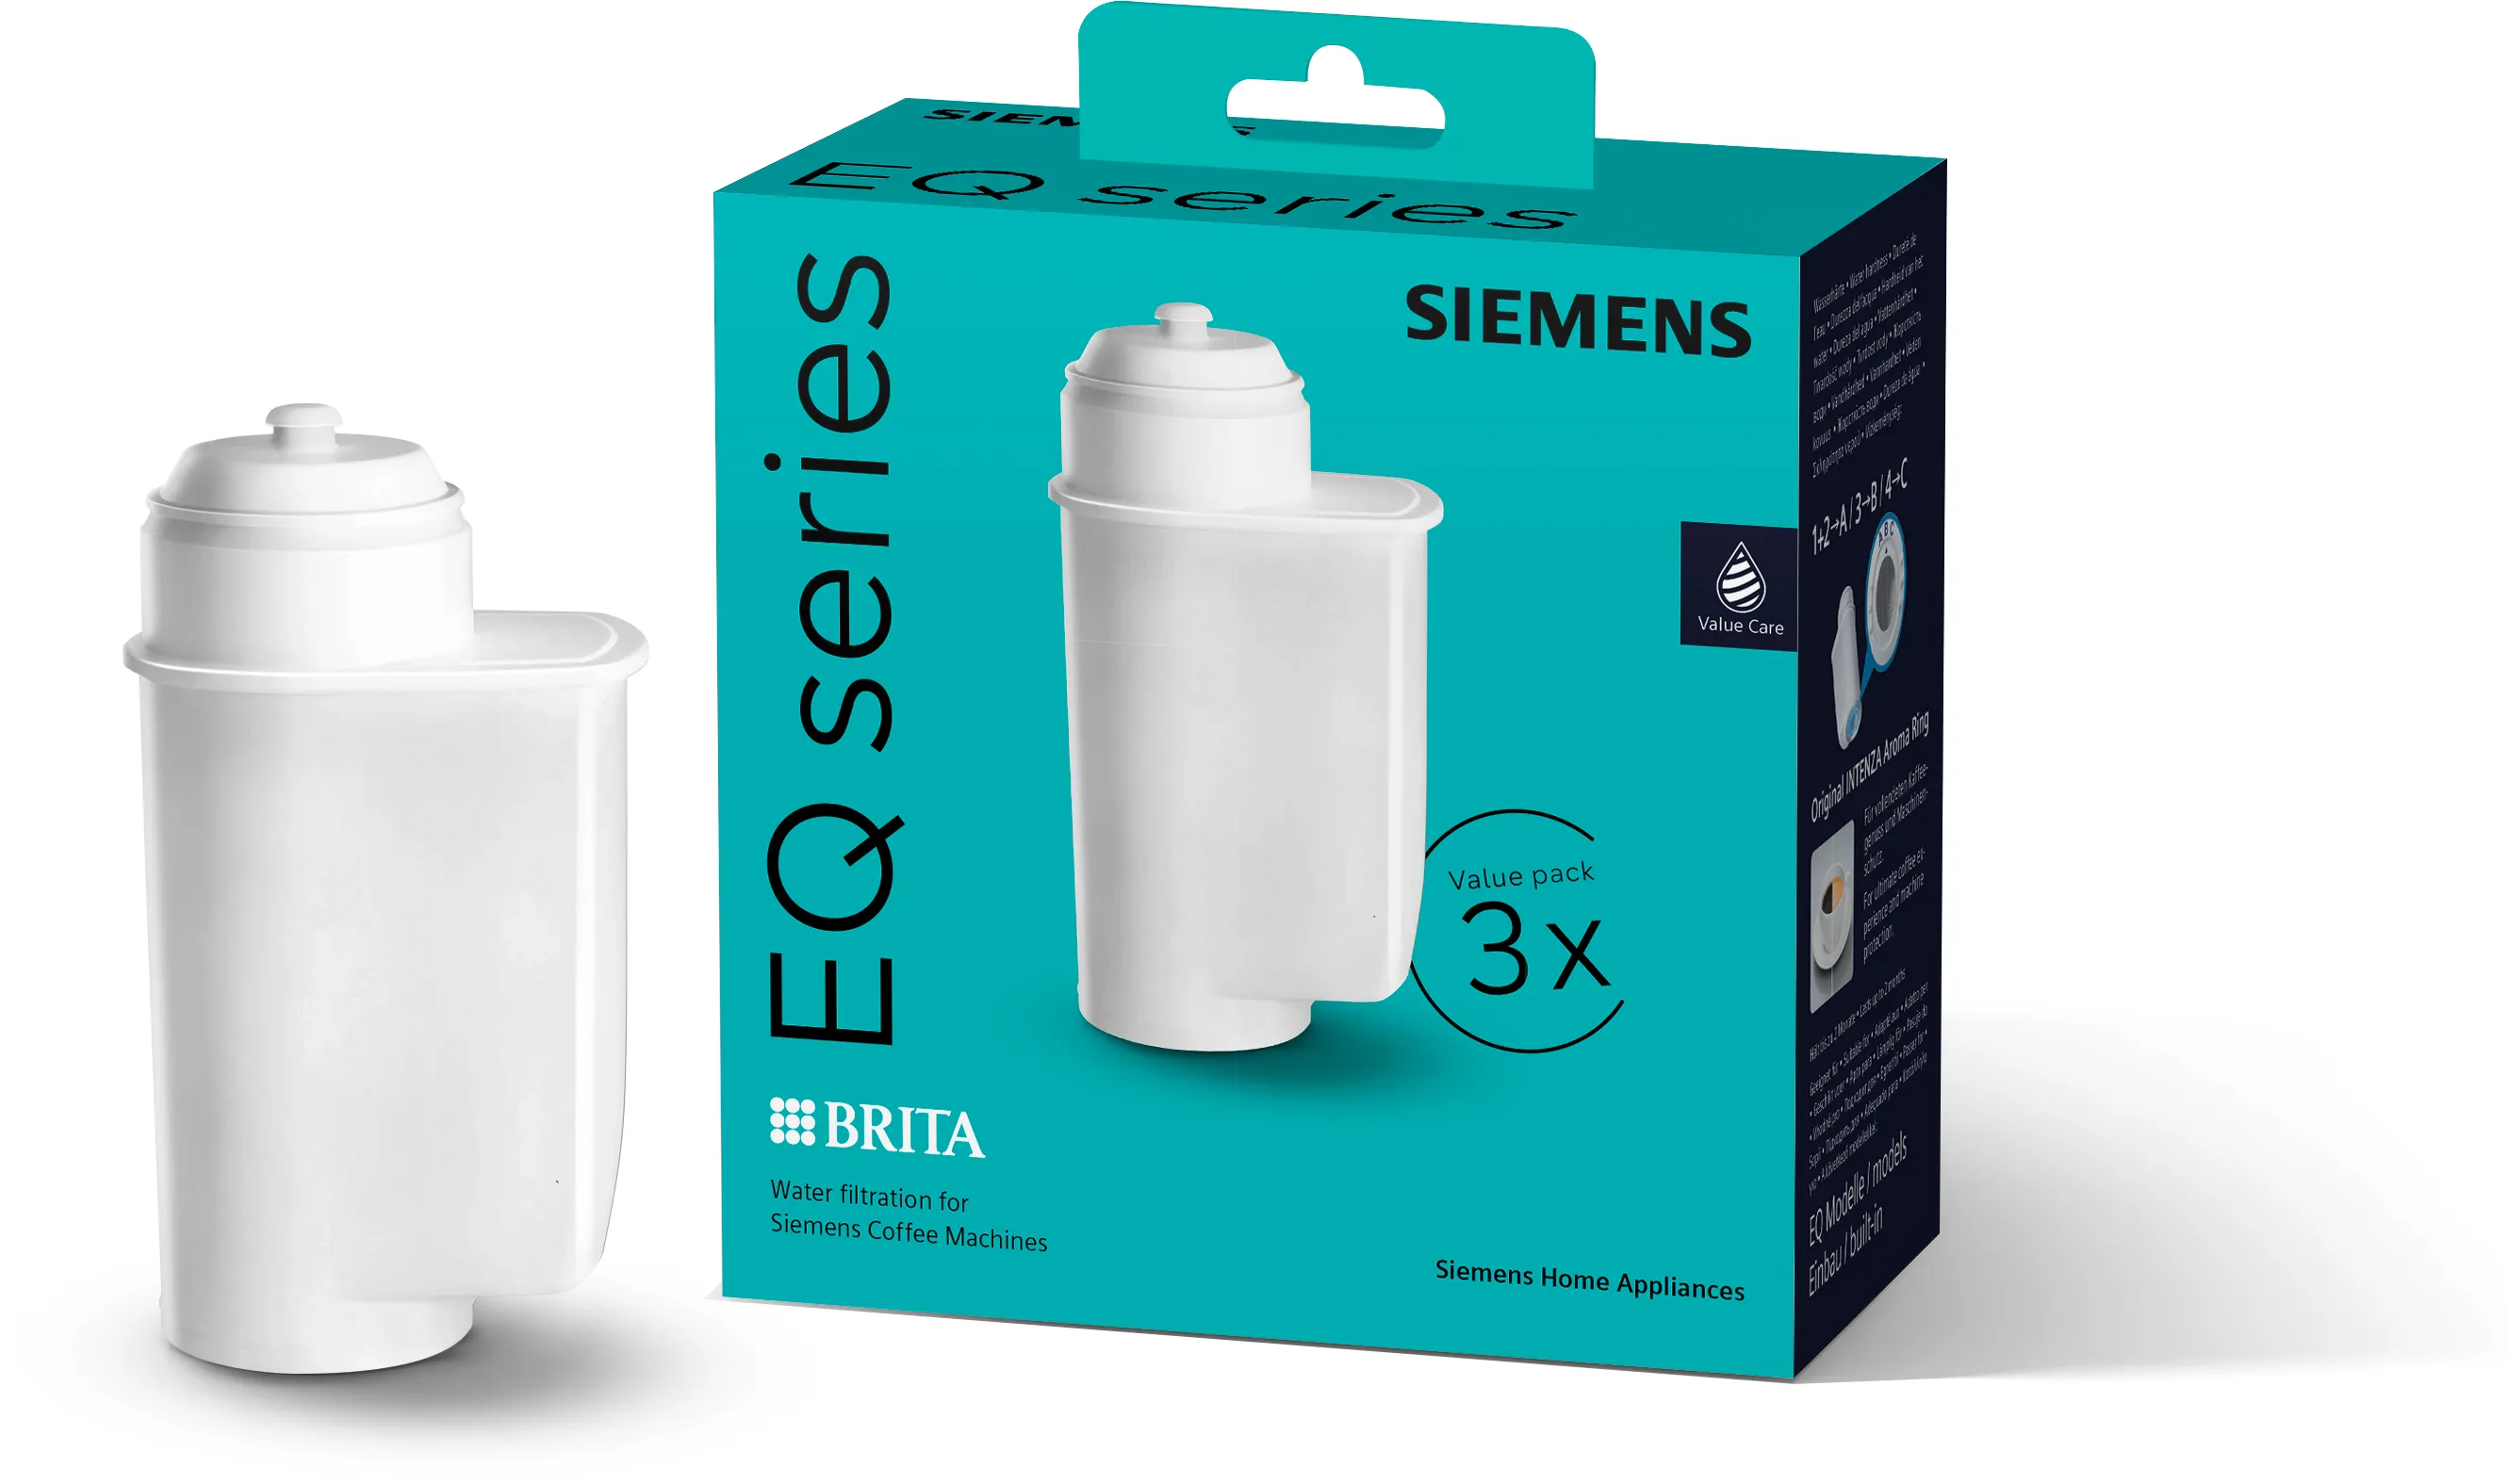 Wasserfilter BRITA Intenza für Kaffeevollautomaten, Siemens Verpackung Inhalt: 3 Stück 